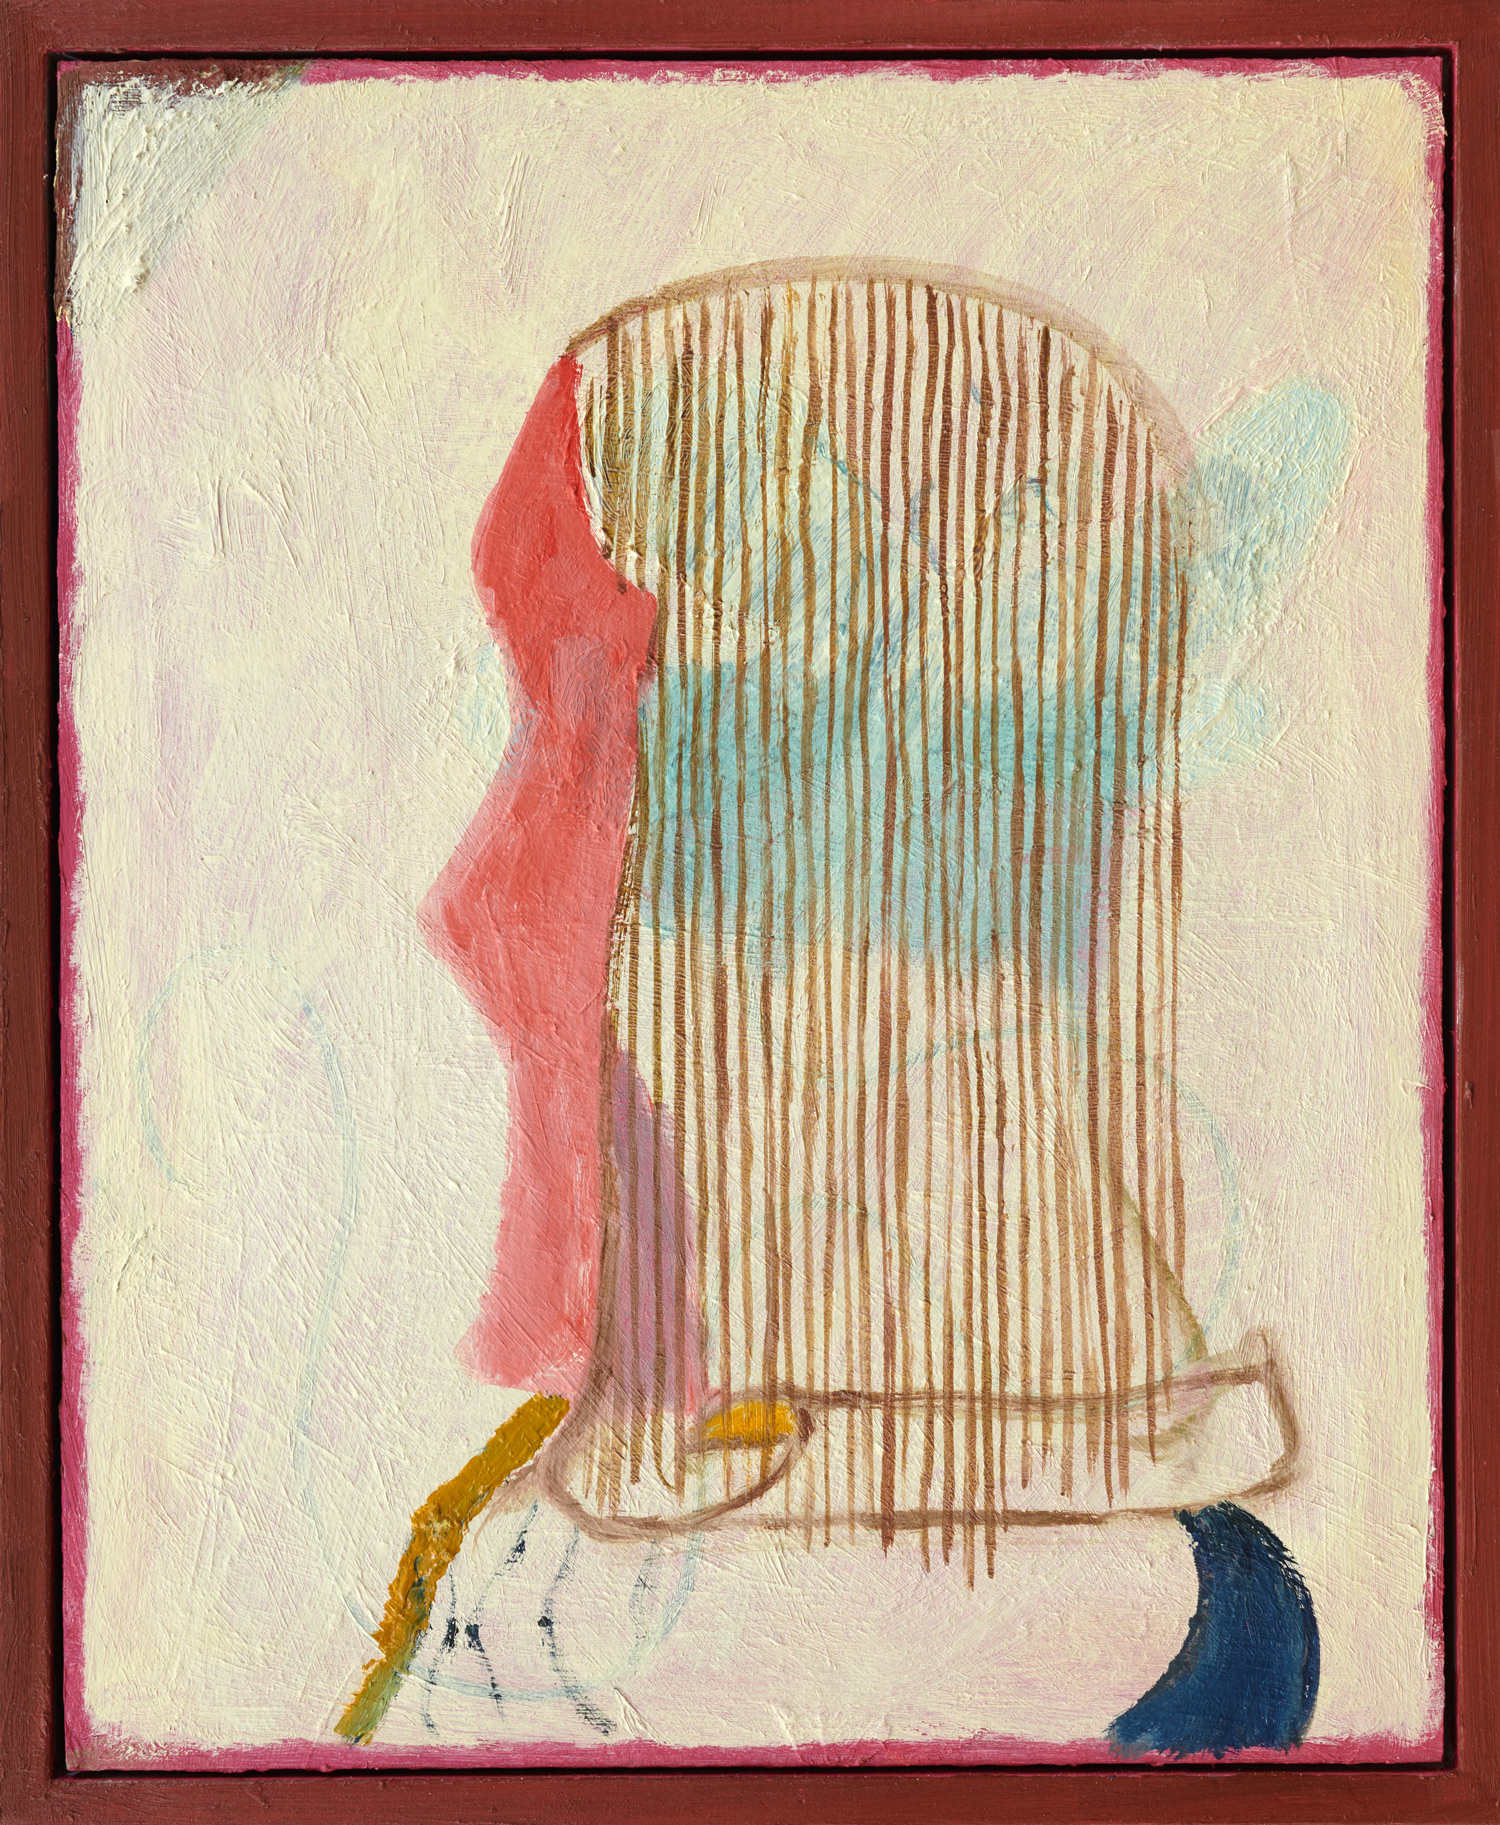 König, 2021, Ölfarbe auf Karton, Rahmen, 36 x 29,5 cm